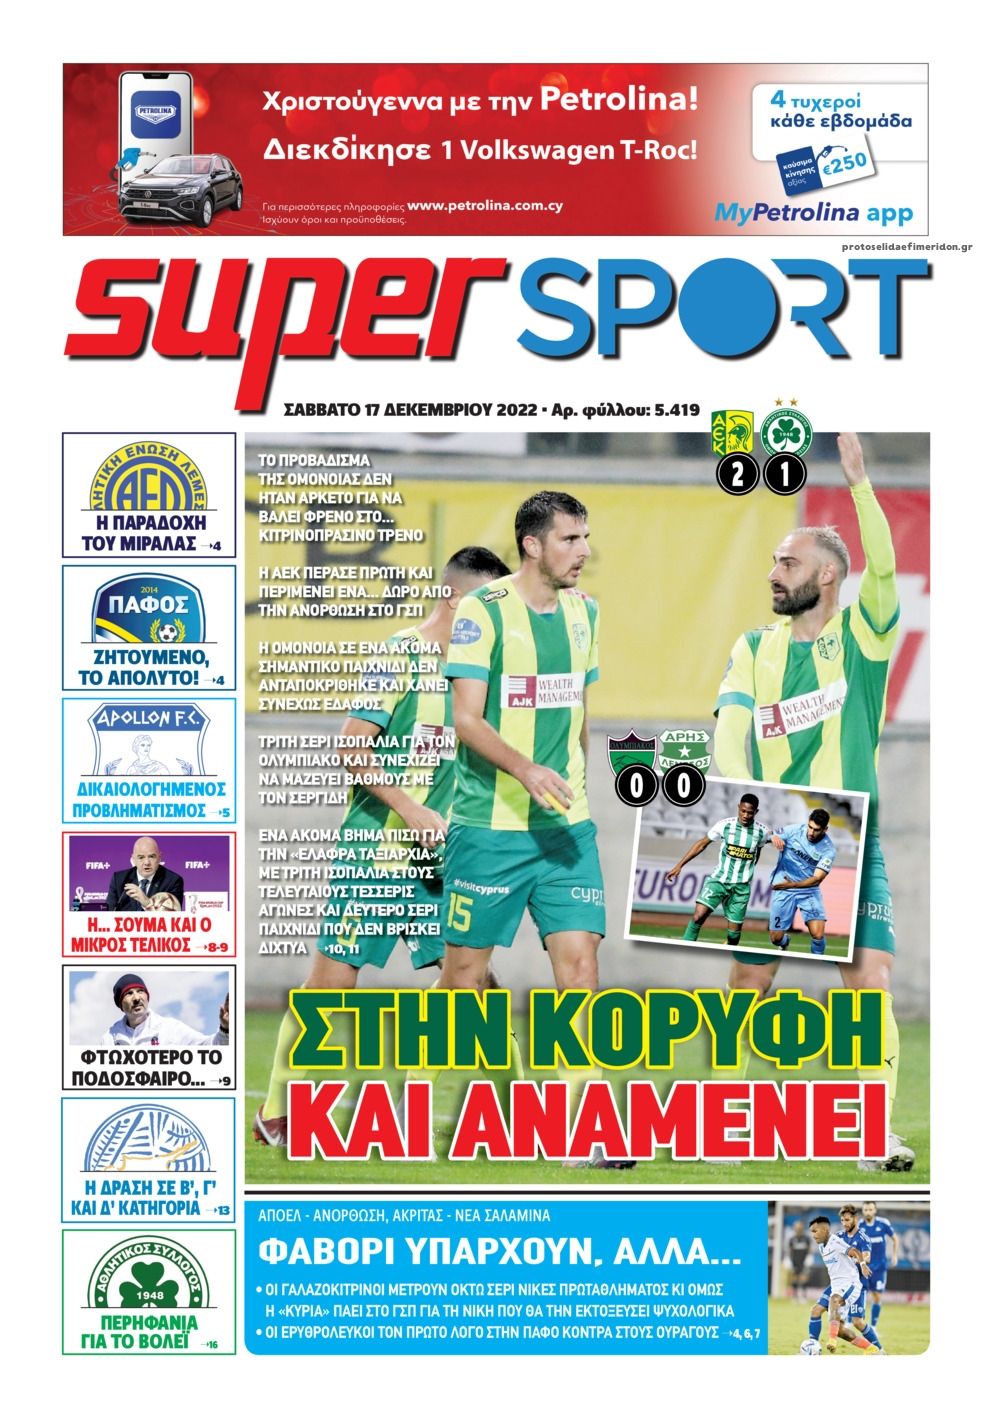 Πρωτοσέλιδο εφημερίδας Αλήθεια Κύπρου supersport